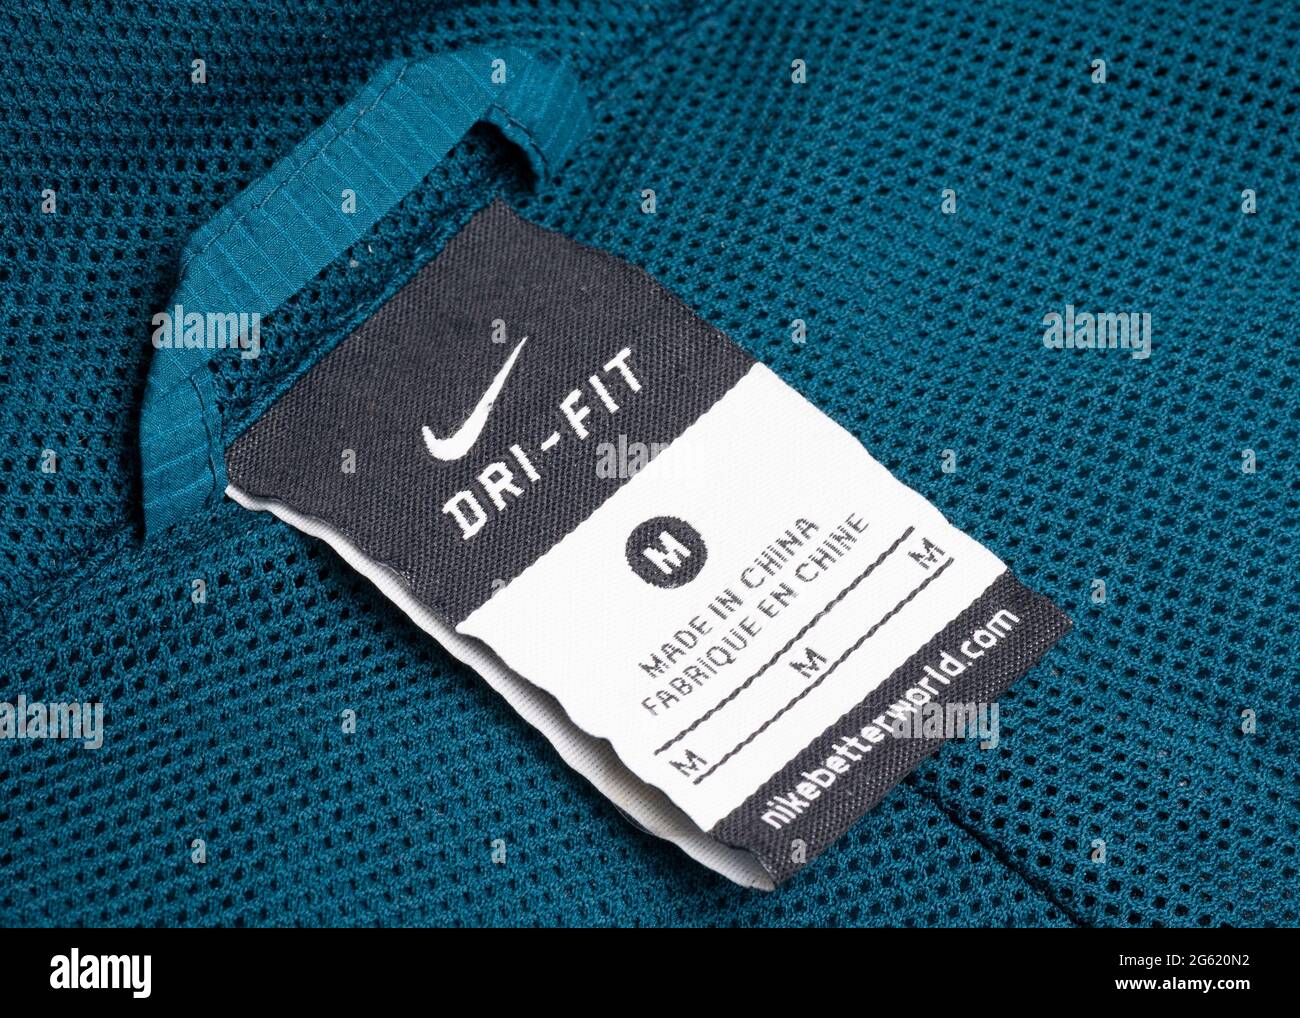 Fabricado en China en la prenda deportiva Nike Dry Fit Fotografía de stock  - Alamy